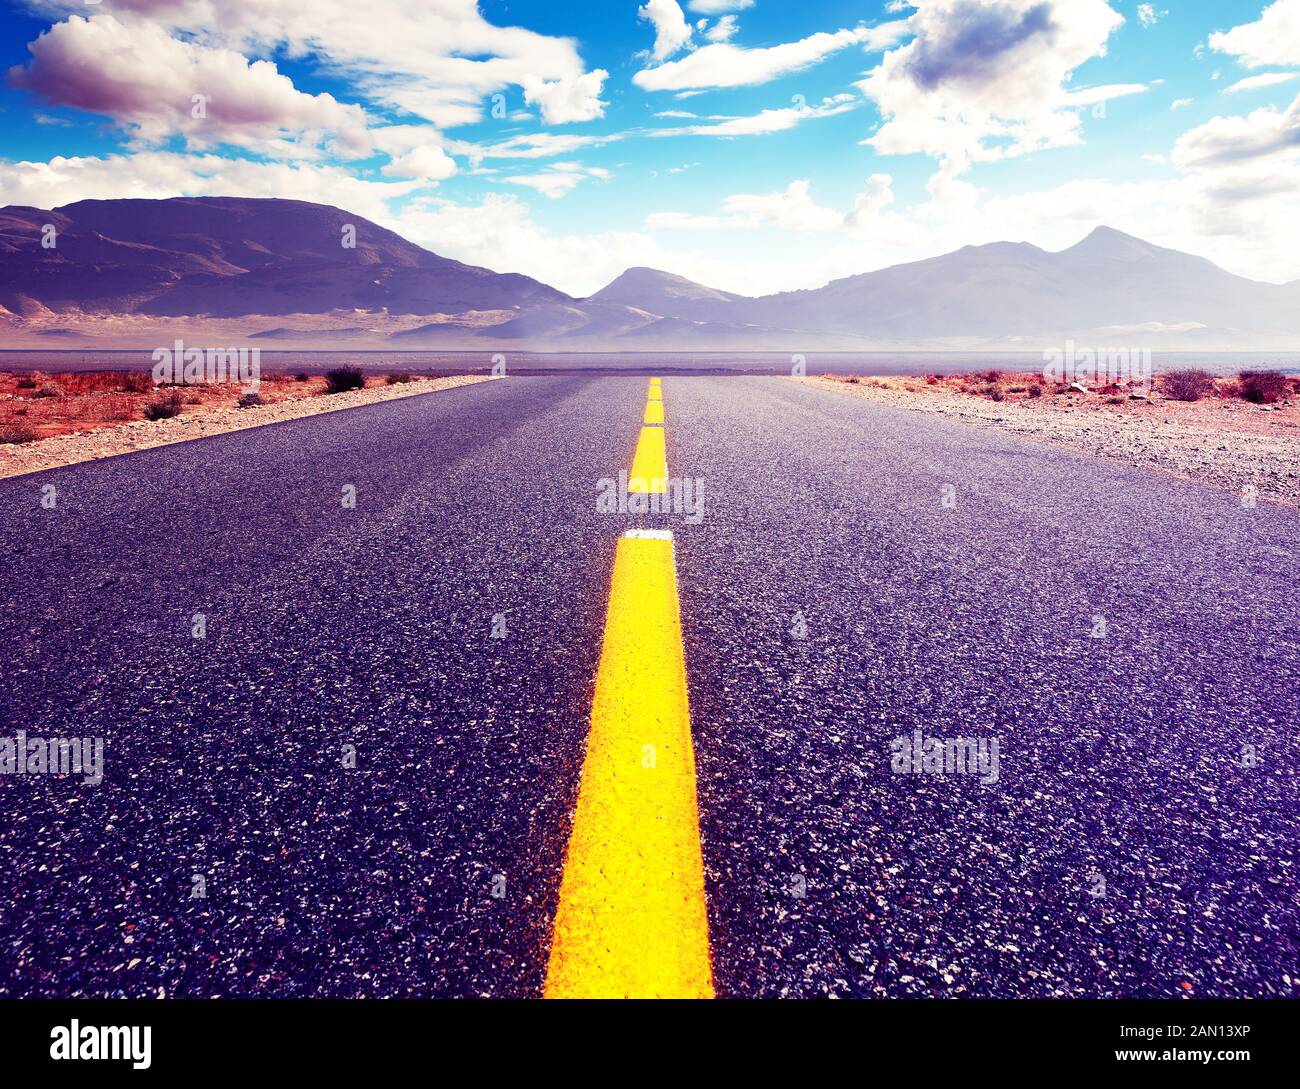 Viaggio in auto e strada panoramica del deserto. Avventure e concetto di destinazione. Fondo strada di campagna e paesaggio colorato tramonto. Foto Stock